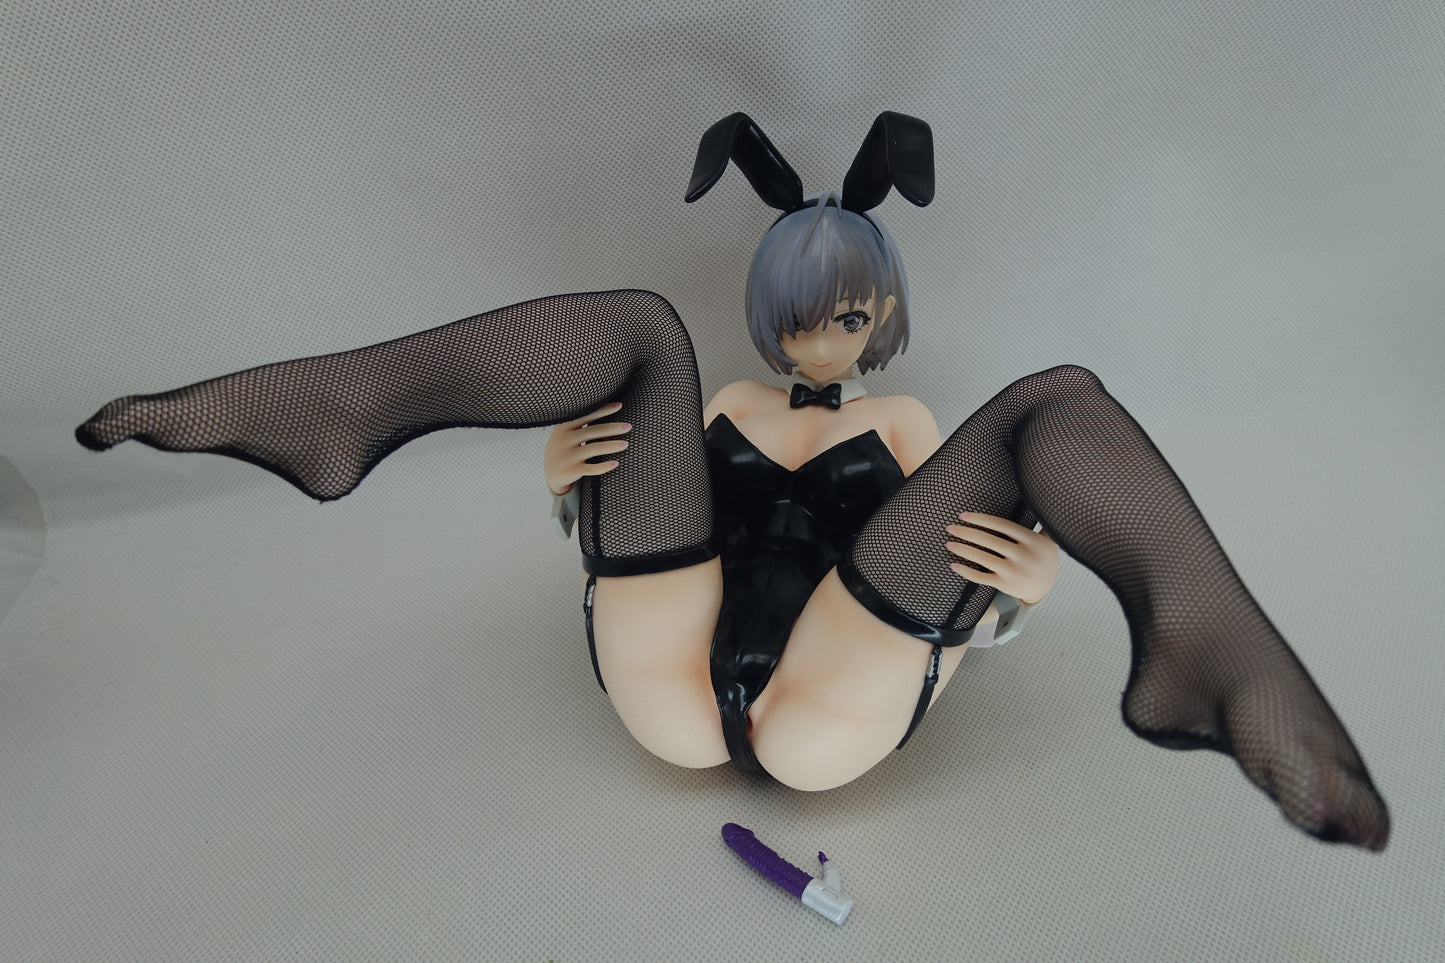 Sasho-san Bunny Girl action figures 1/6 naked anime figure